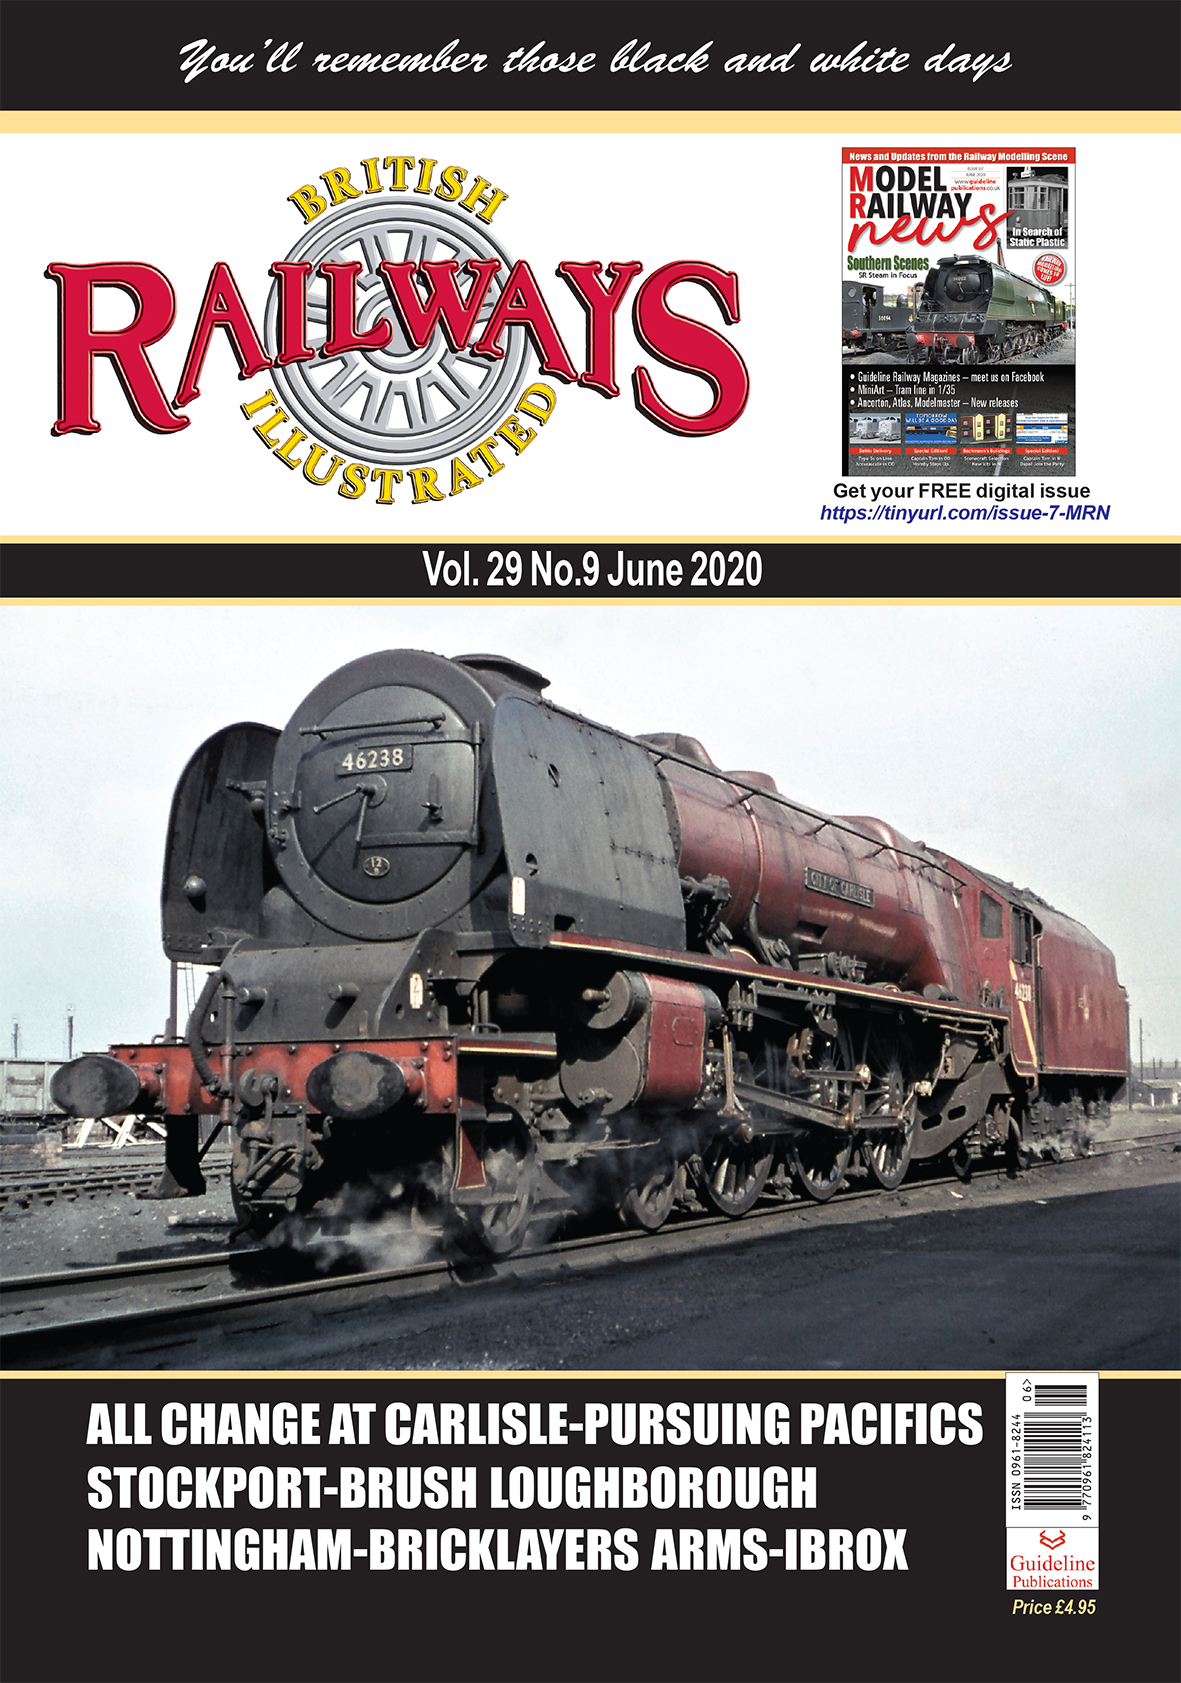 Guideline Publications Ltd British Railways Illustrated  vol 29 - 09 June 2020 